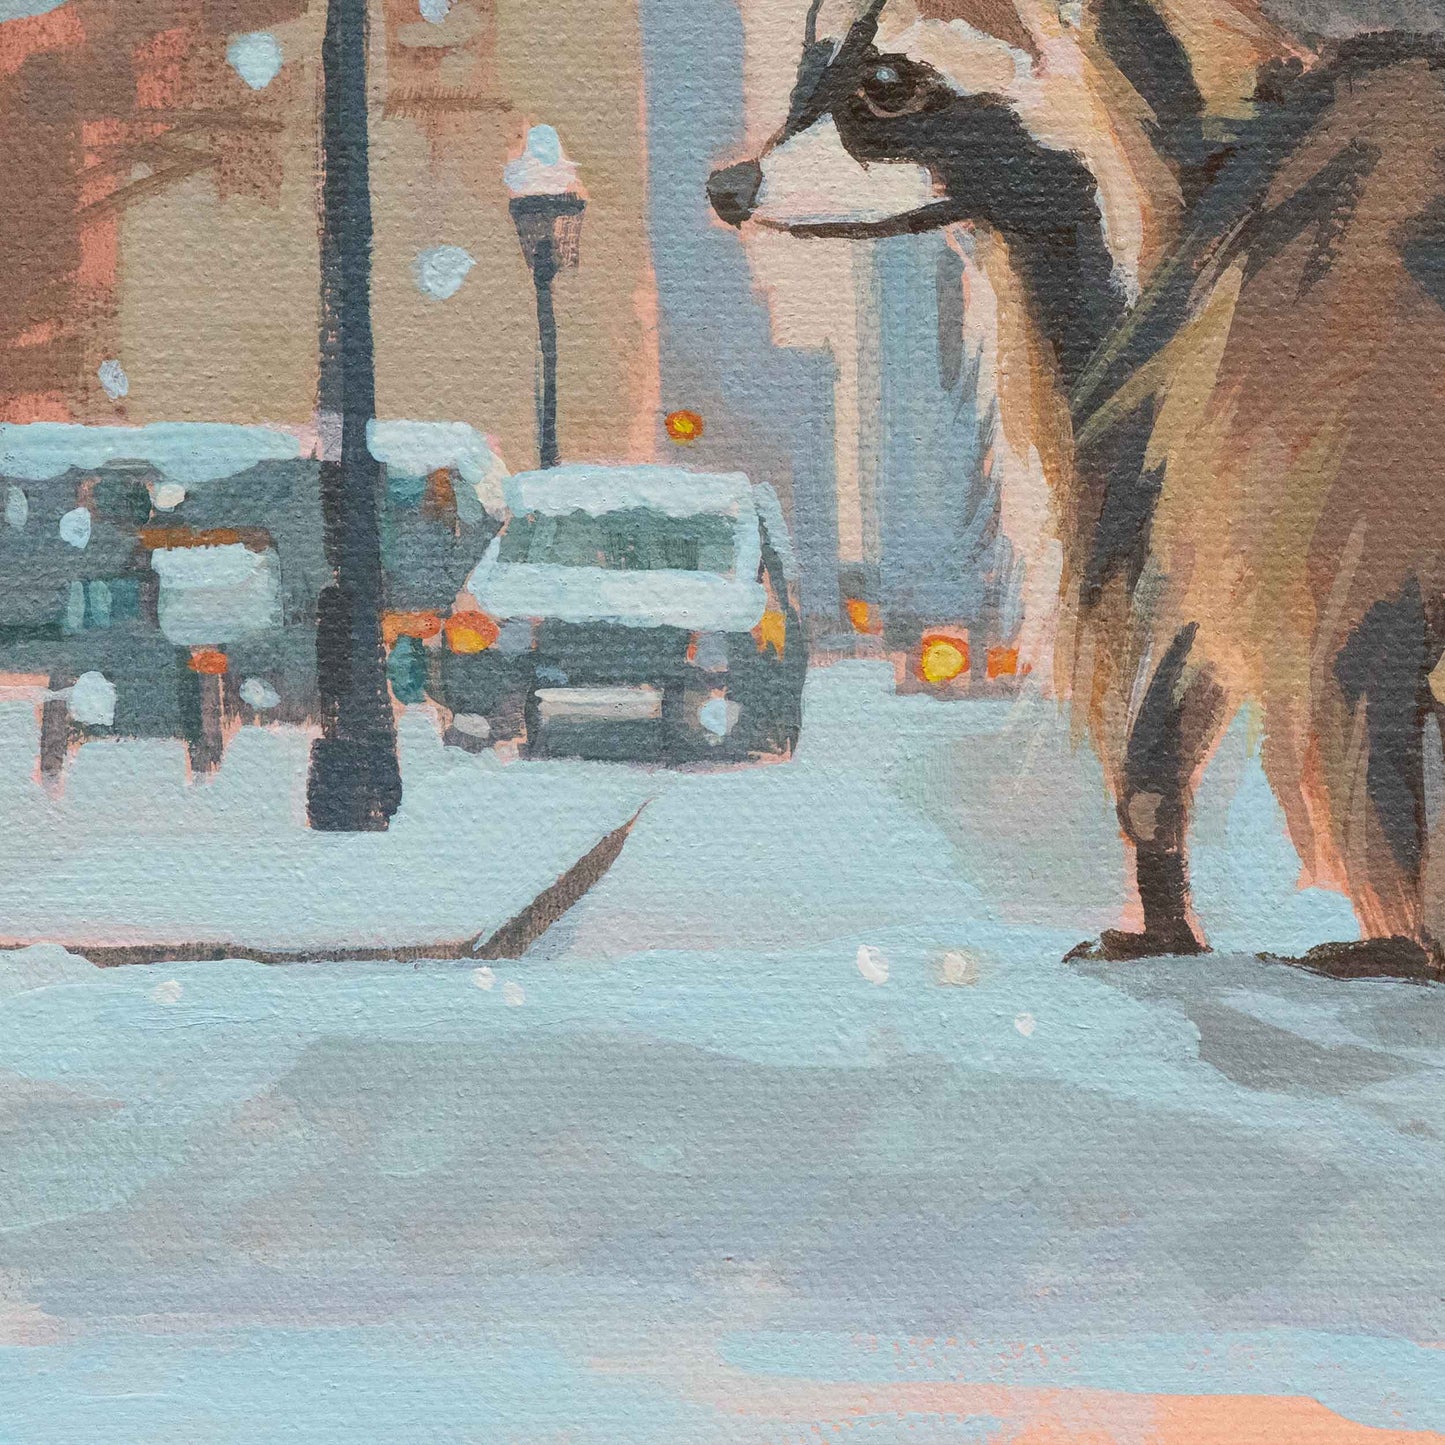 City bear, unique, painting, hand-painted unique piece, 20x20 cm, with picture frame